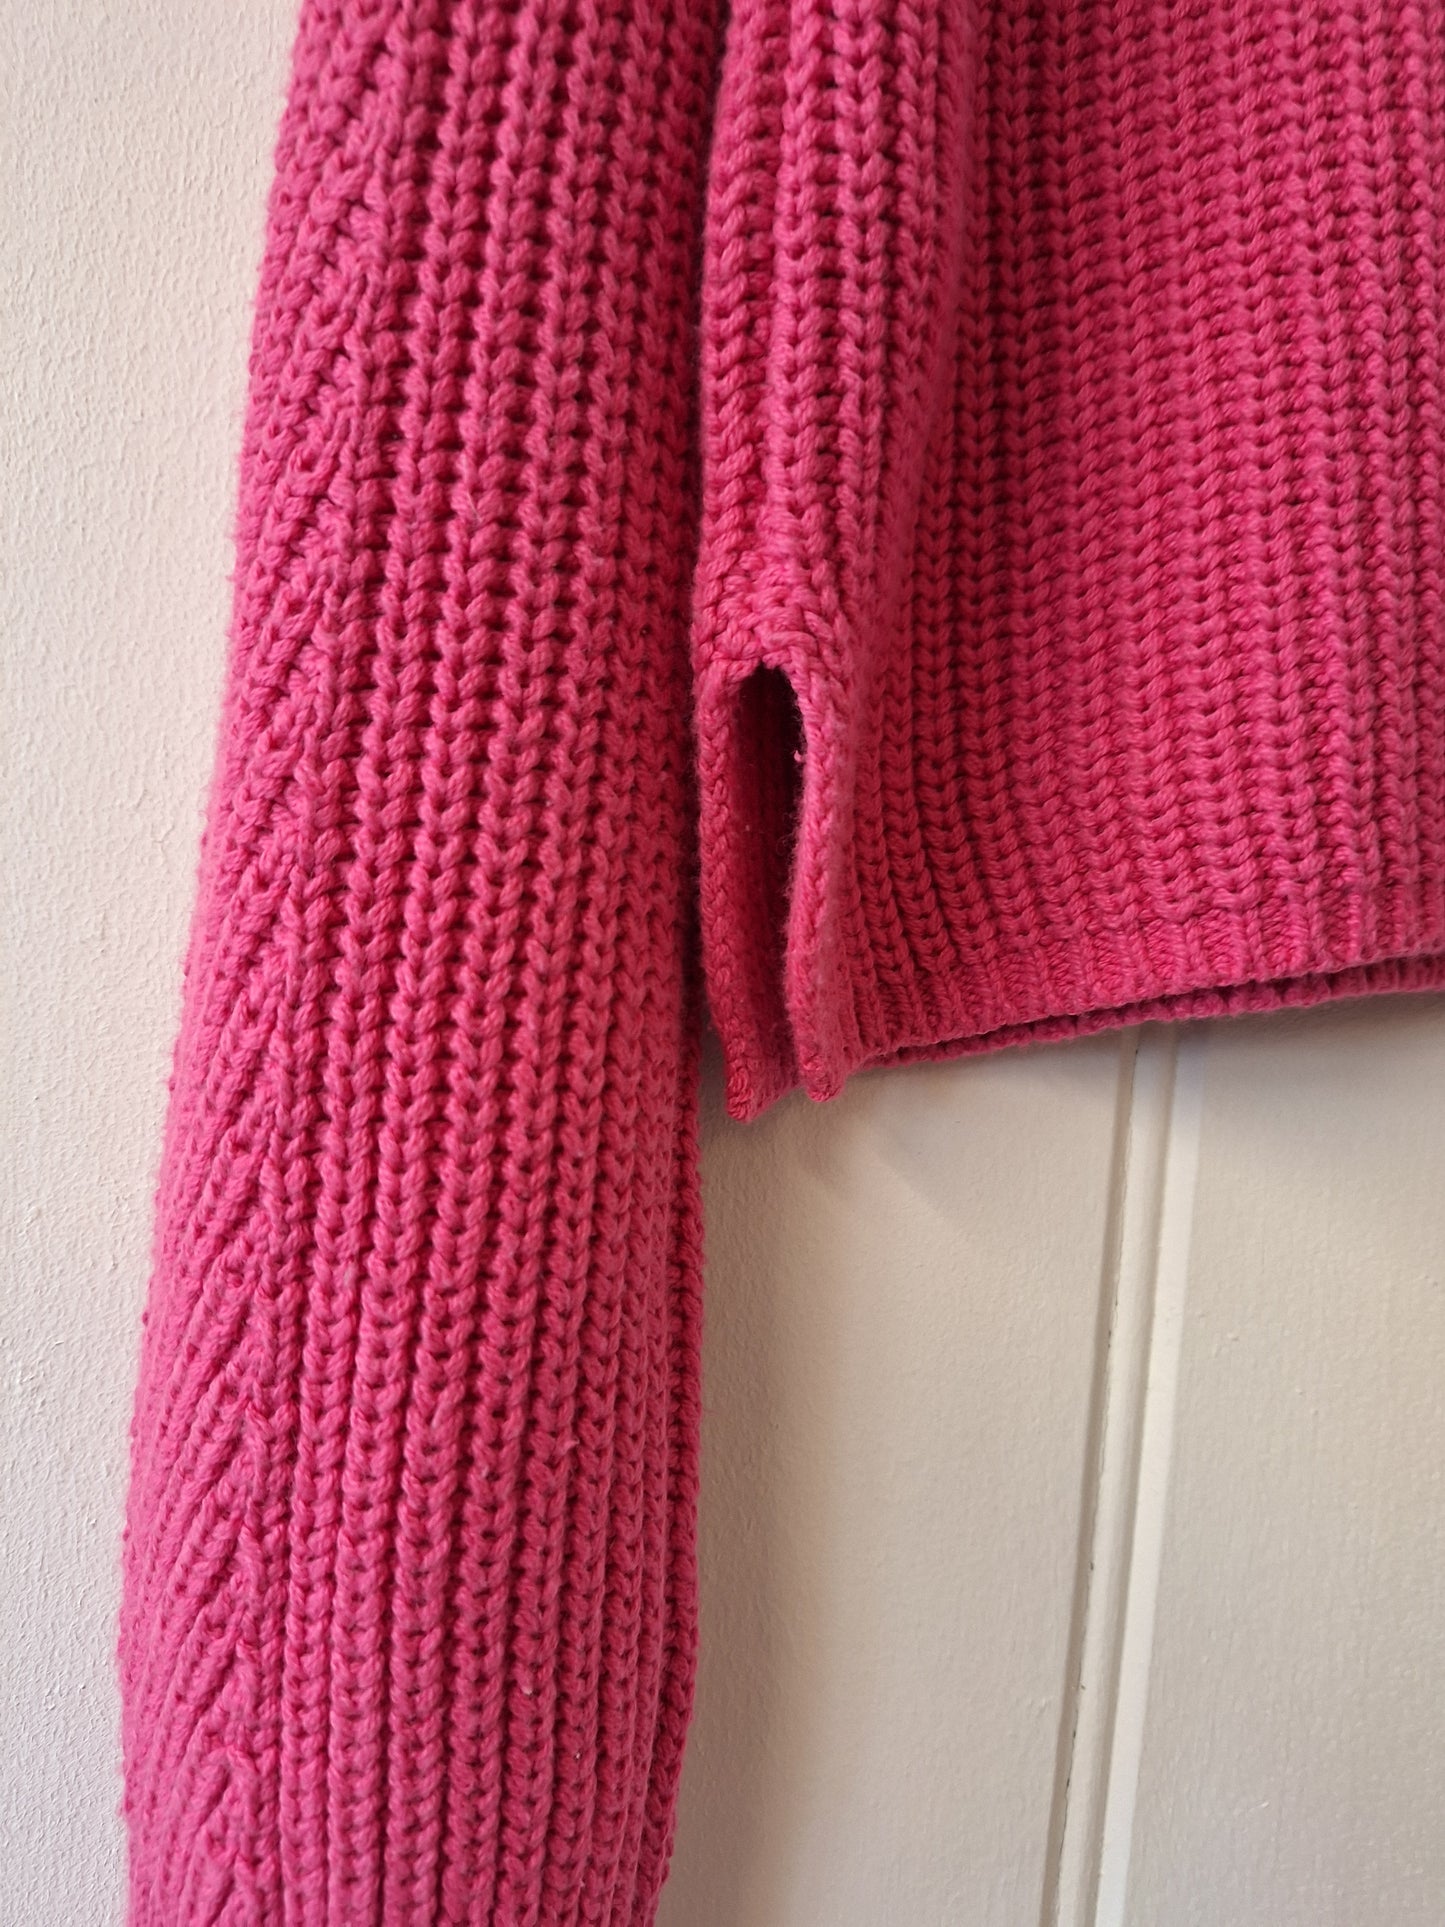 MbyM pink knit